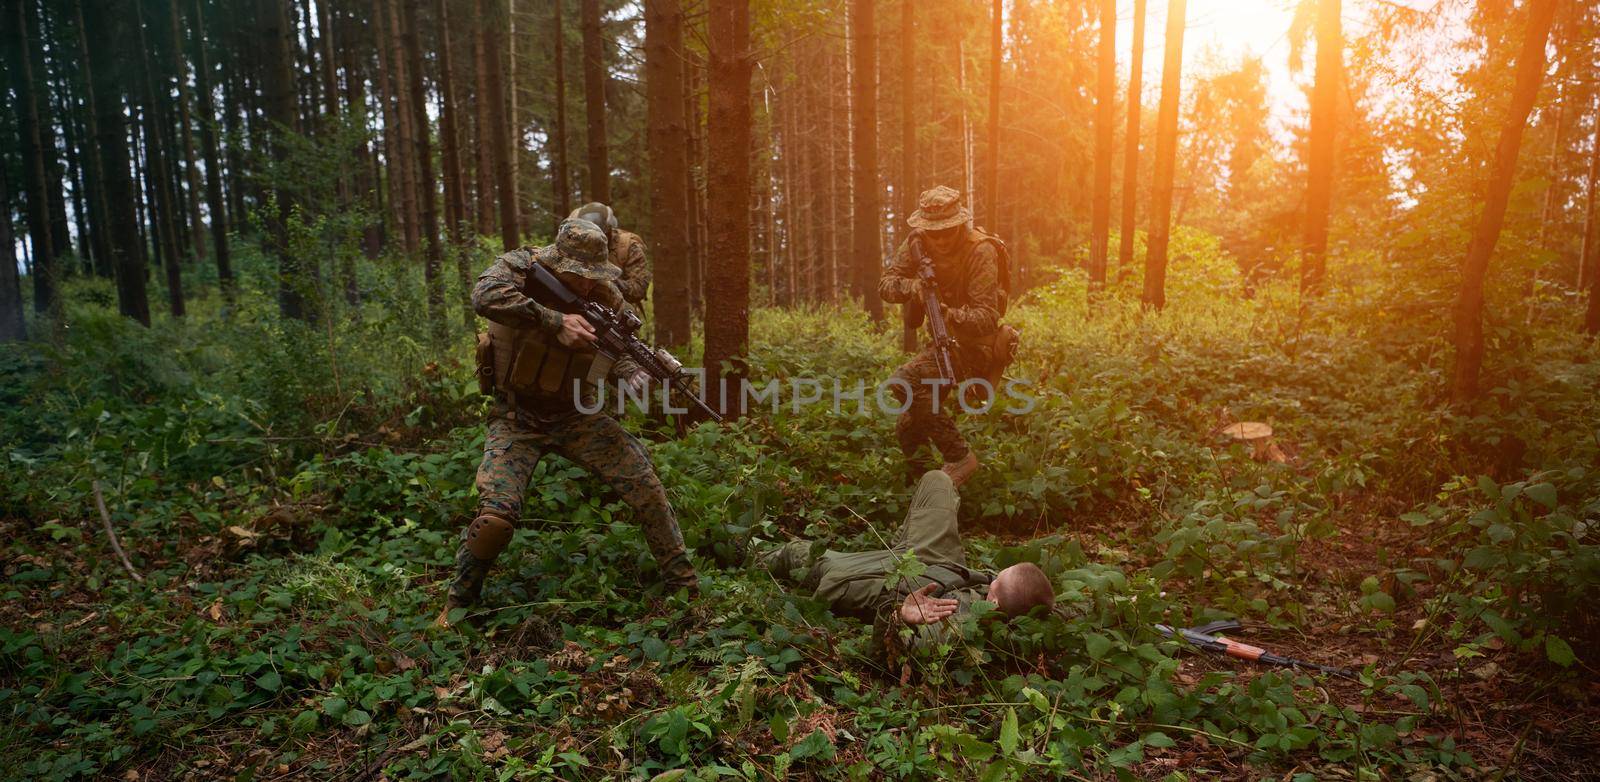 marines capture terrorist  alive by dotshock